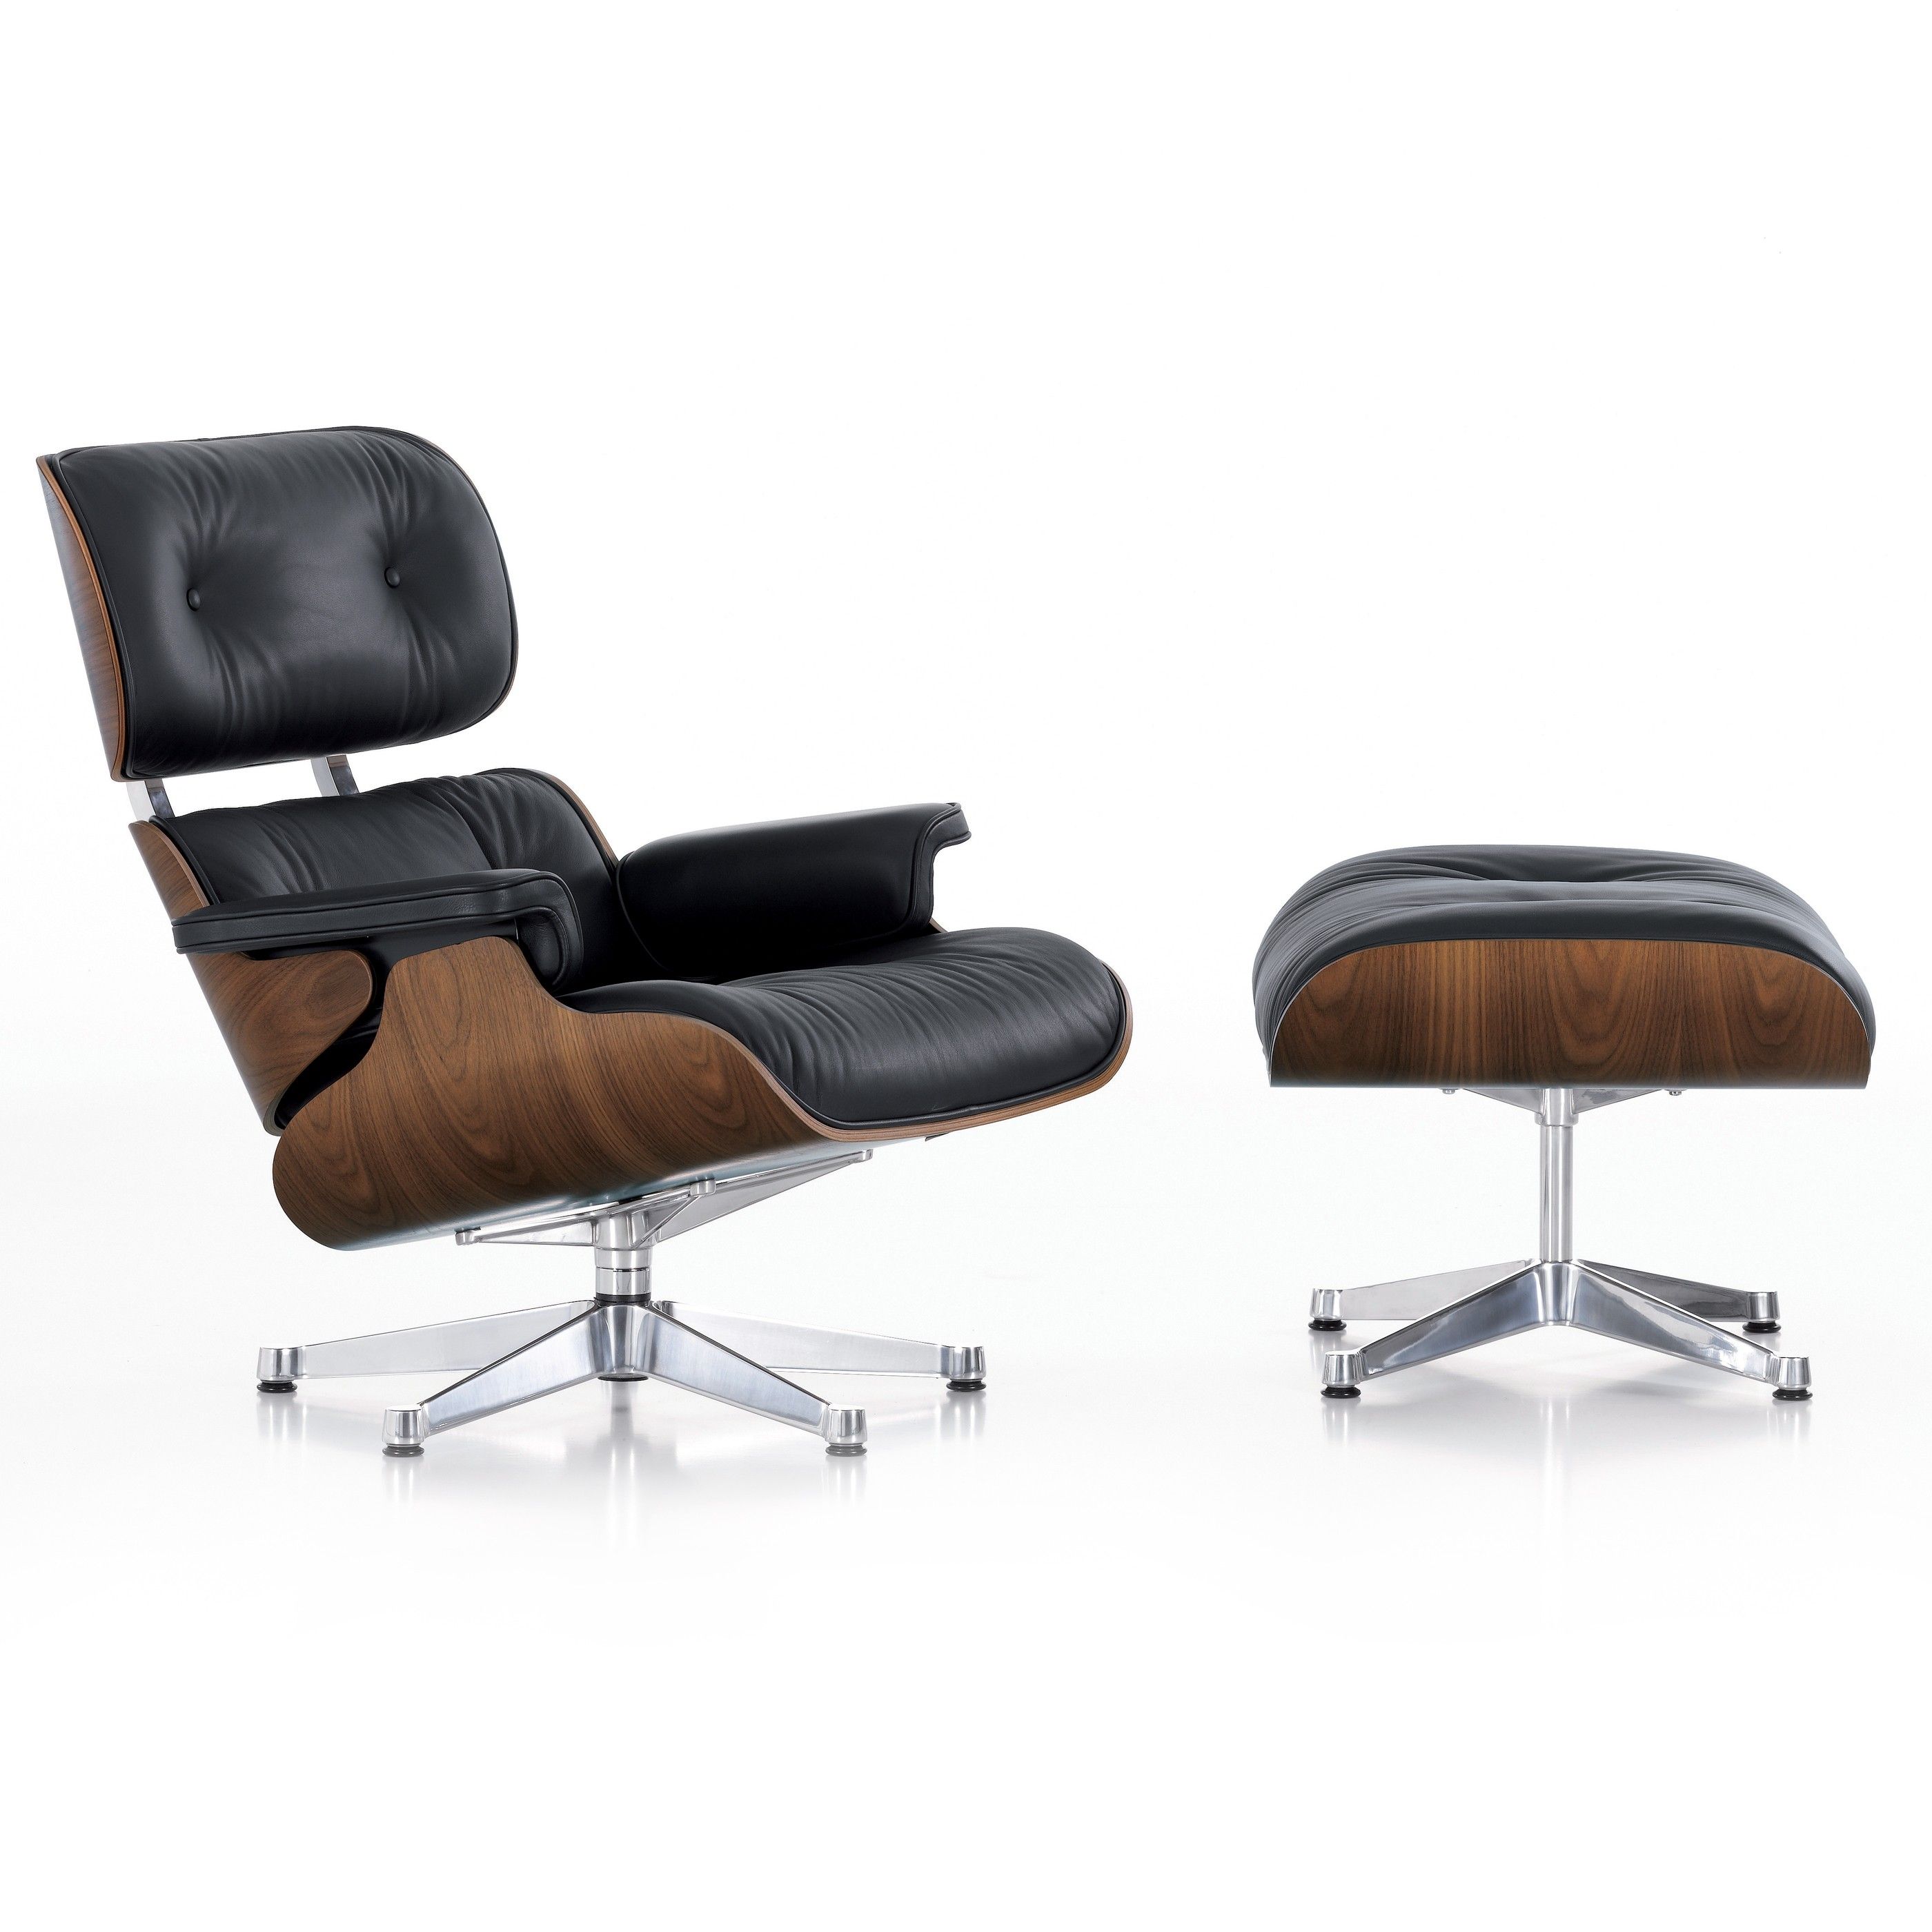 grip Overstijgen residentie Vitra Eames Lounge chair met Ottoman fauteuil (nieuwe afmetingen)  walnotenhout | Flinders